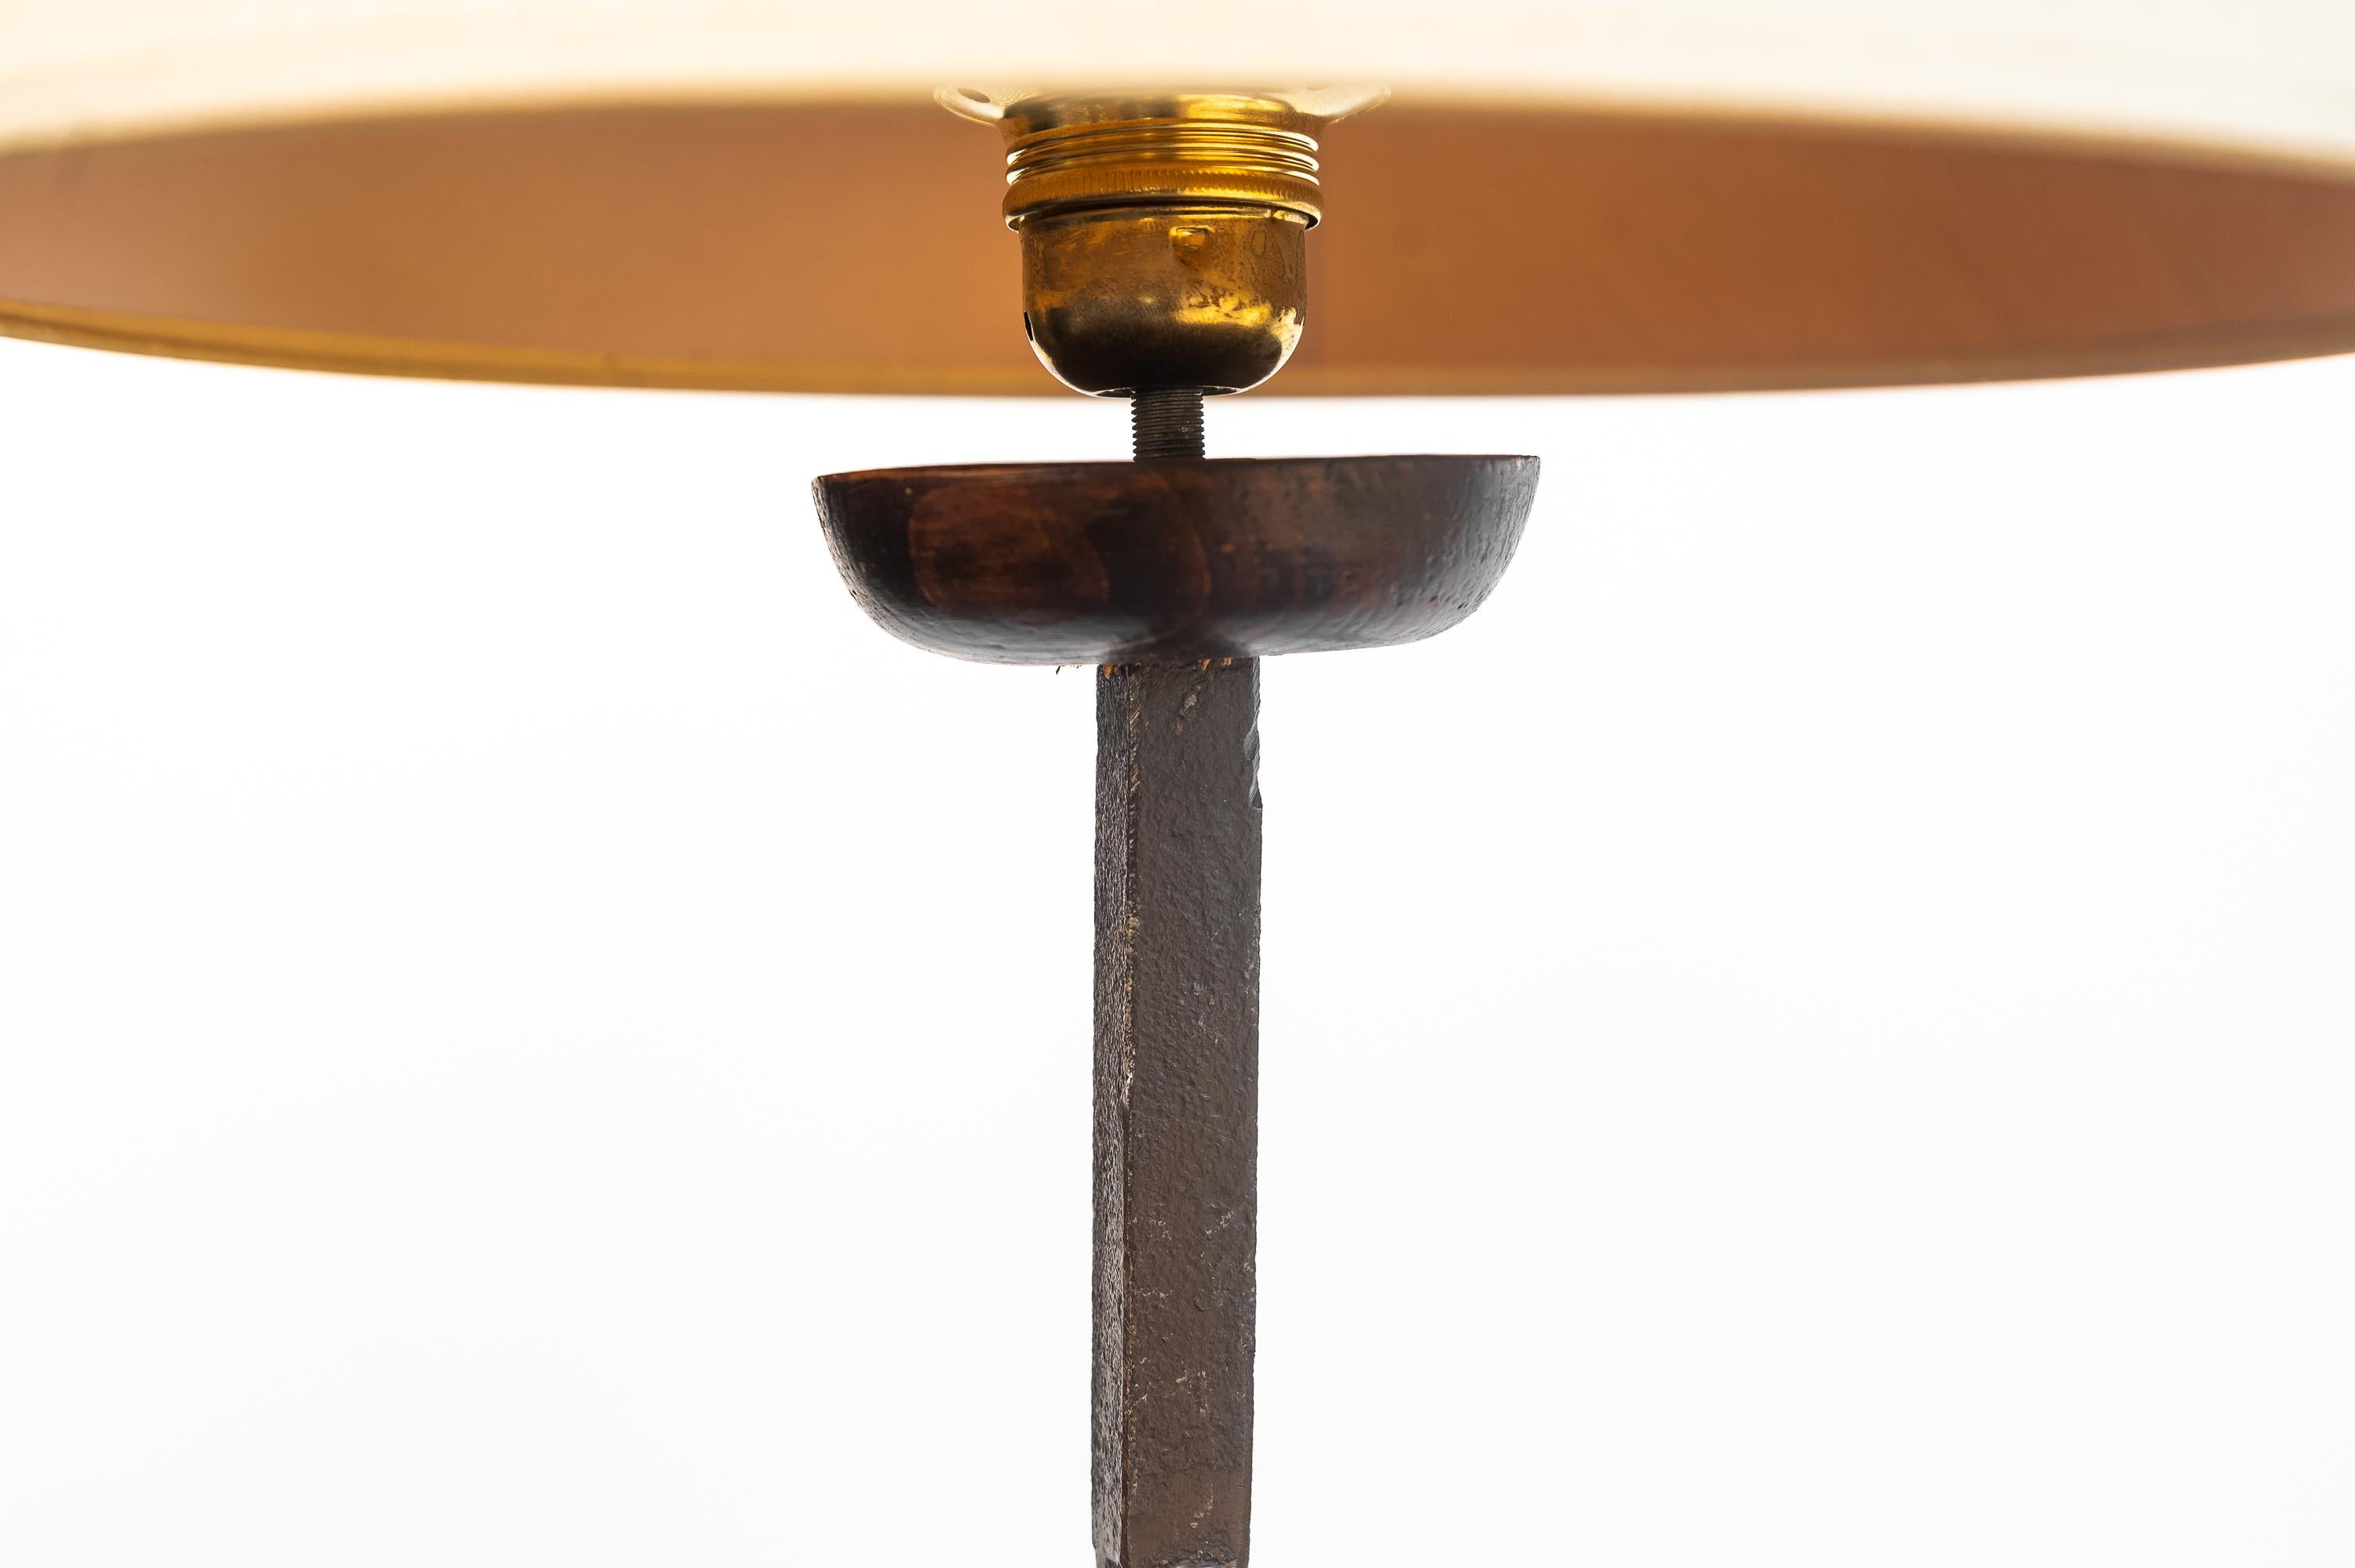 Stehlampe aus Schmiedeeisen, zweite Hälfte des 19. Jahrhunderts. 
Schöne schmiedeeiserne Stehlampe mit drei Beinen. Der Sockel, der die Lampenfassung hält, ist aus gedrechseltem Holz gefertigt. In der Mitte des Stabes befindet sich ein Holzornament.